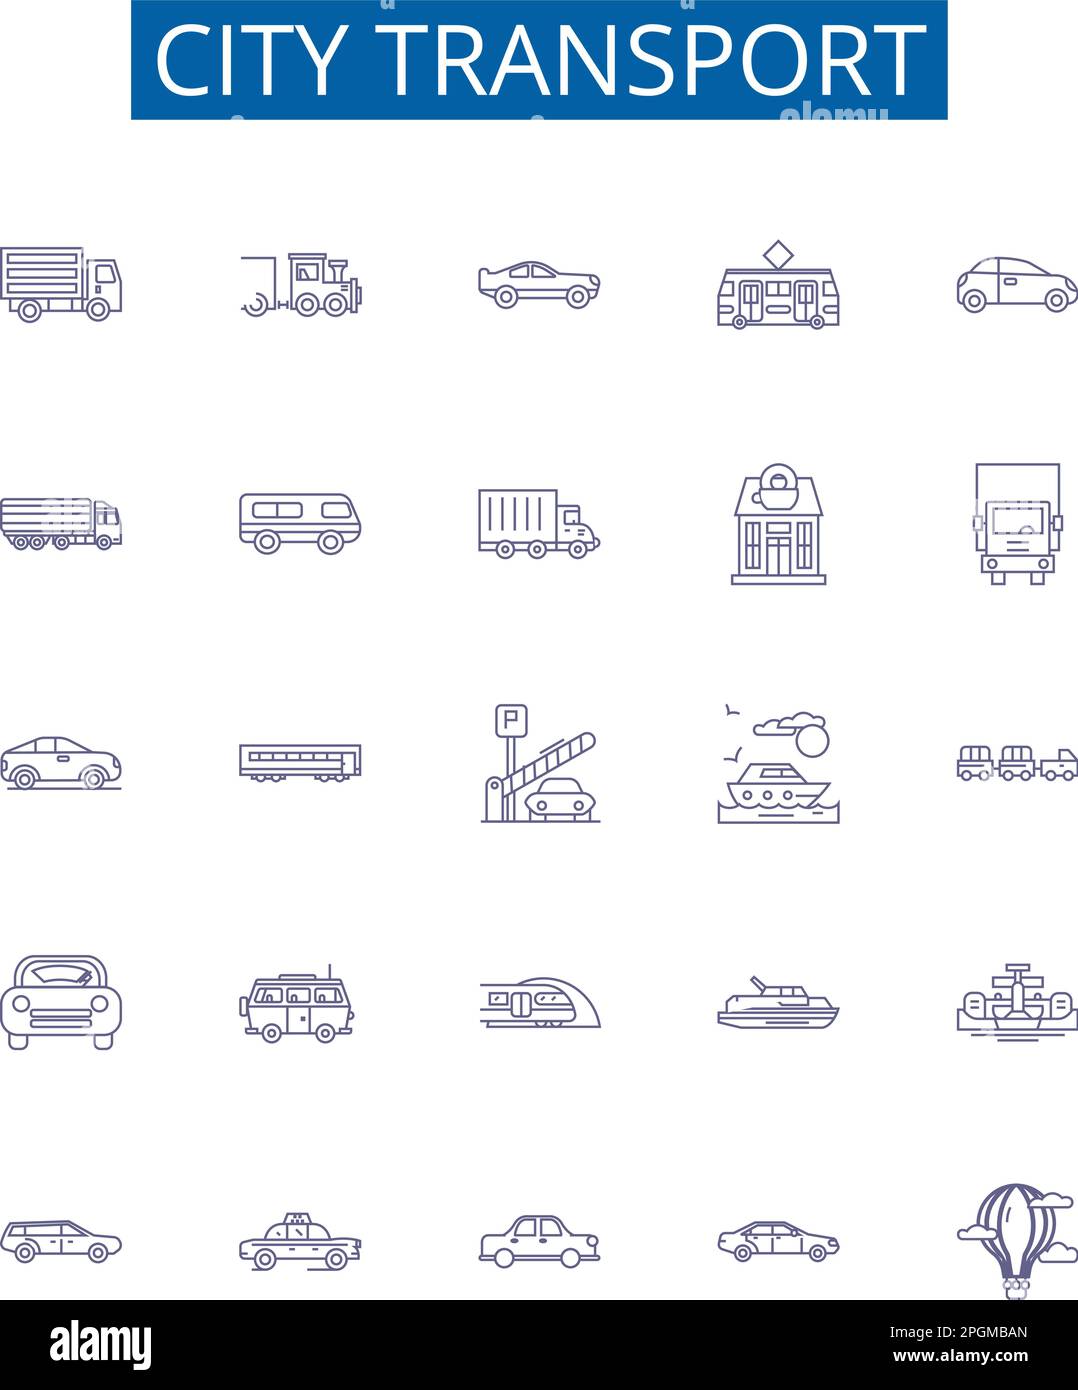 Les panneaux Icons de la ligne de transport de la ville s'affichent. Collection design de urbain, transport, bus, métro, Metro, Vecteur de concept automobile, vélo, taxi Illustration de Vecteur